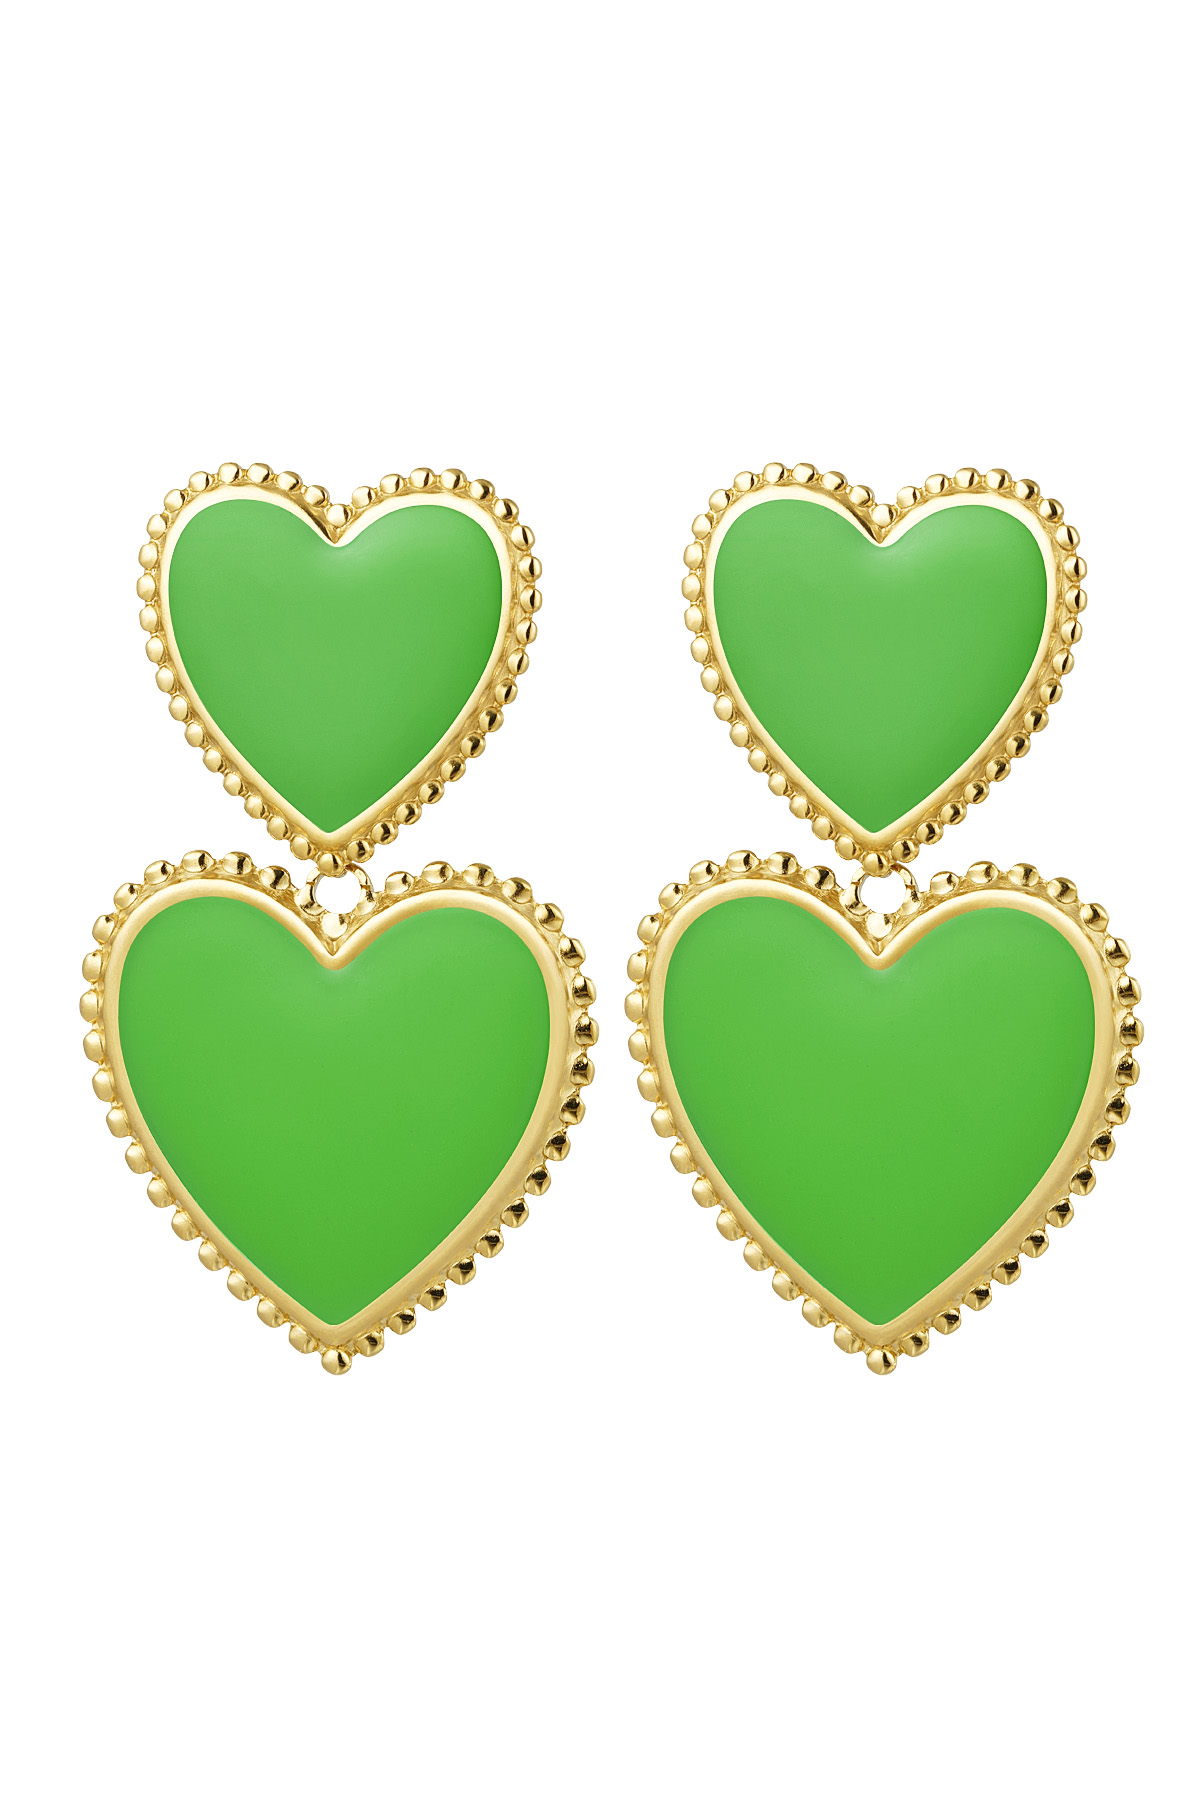 Boucles d'oreilles 2 x coeur - vert Vert & Or Acier inoxydable 